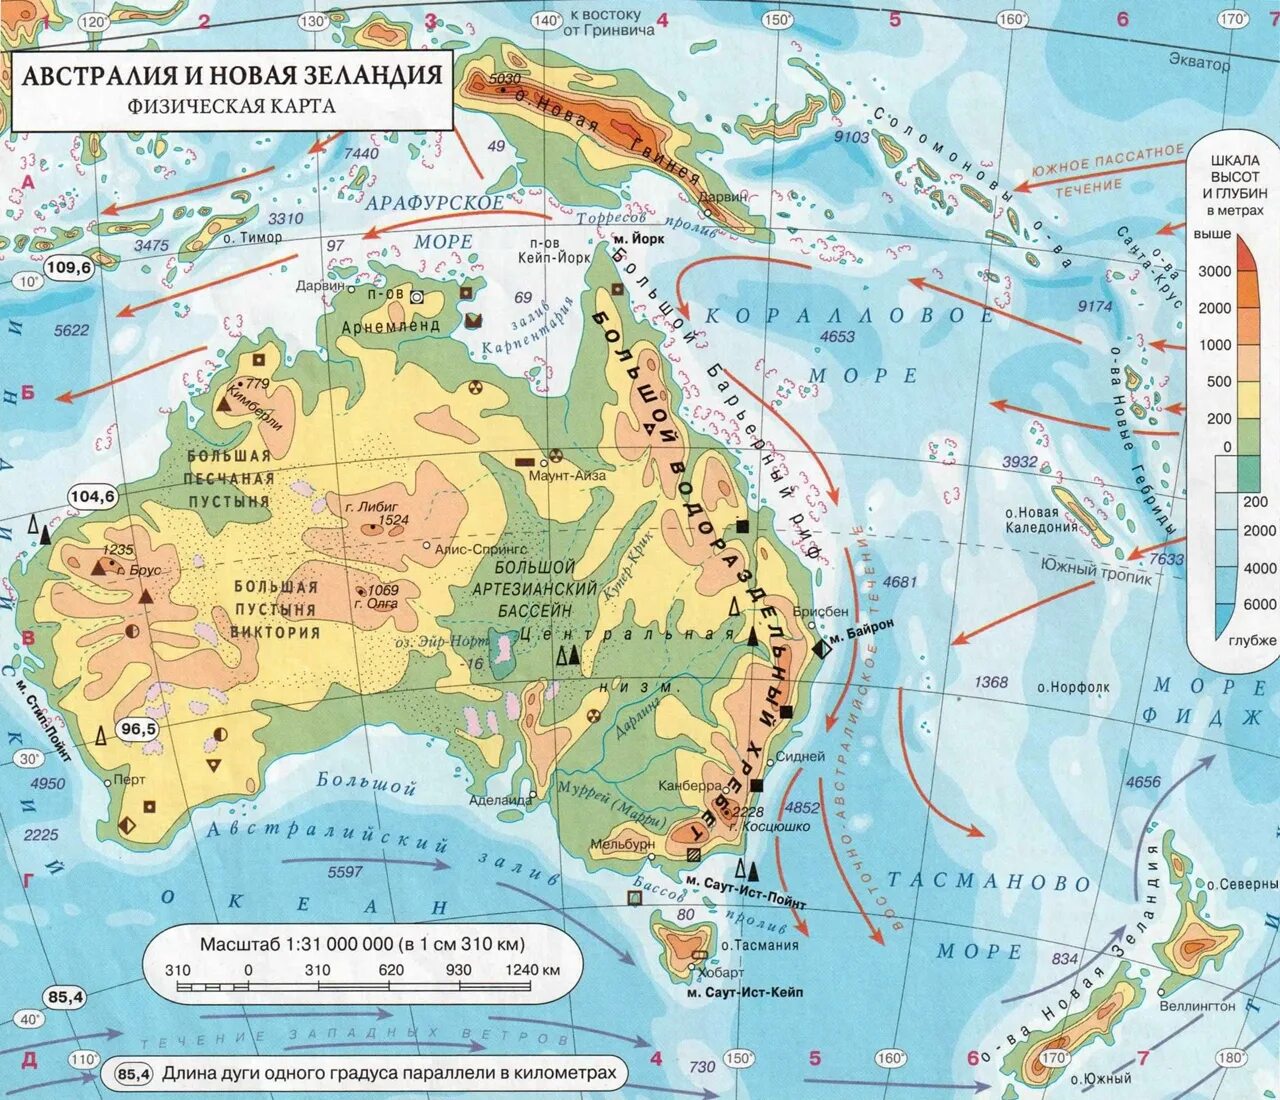 Моря: Арафурское, коралловое и тасманово.. Физ карта Австралии. Моря в Австралии Тиморское Арафурское коралловое. Материк Австралия физическая карта. Направление течений австралии